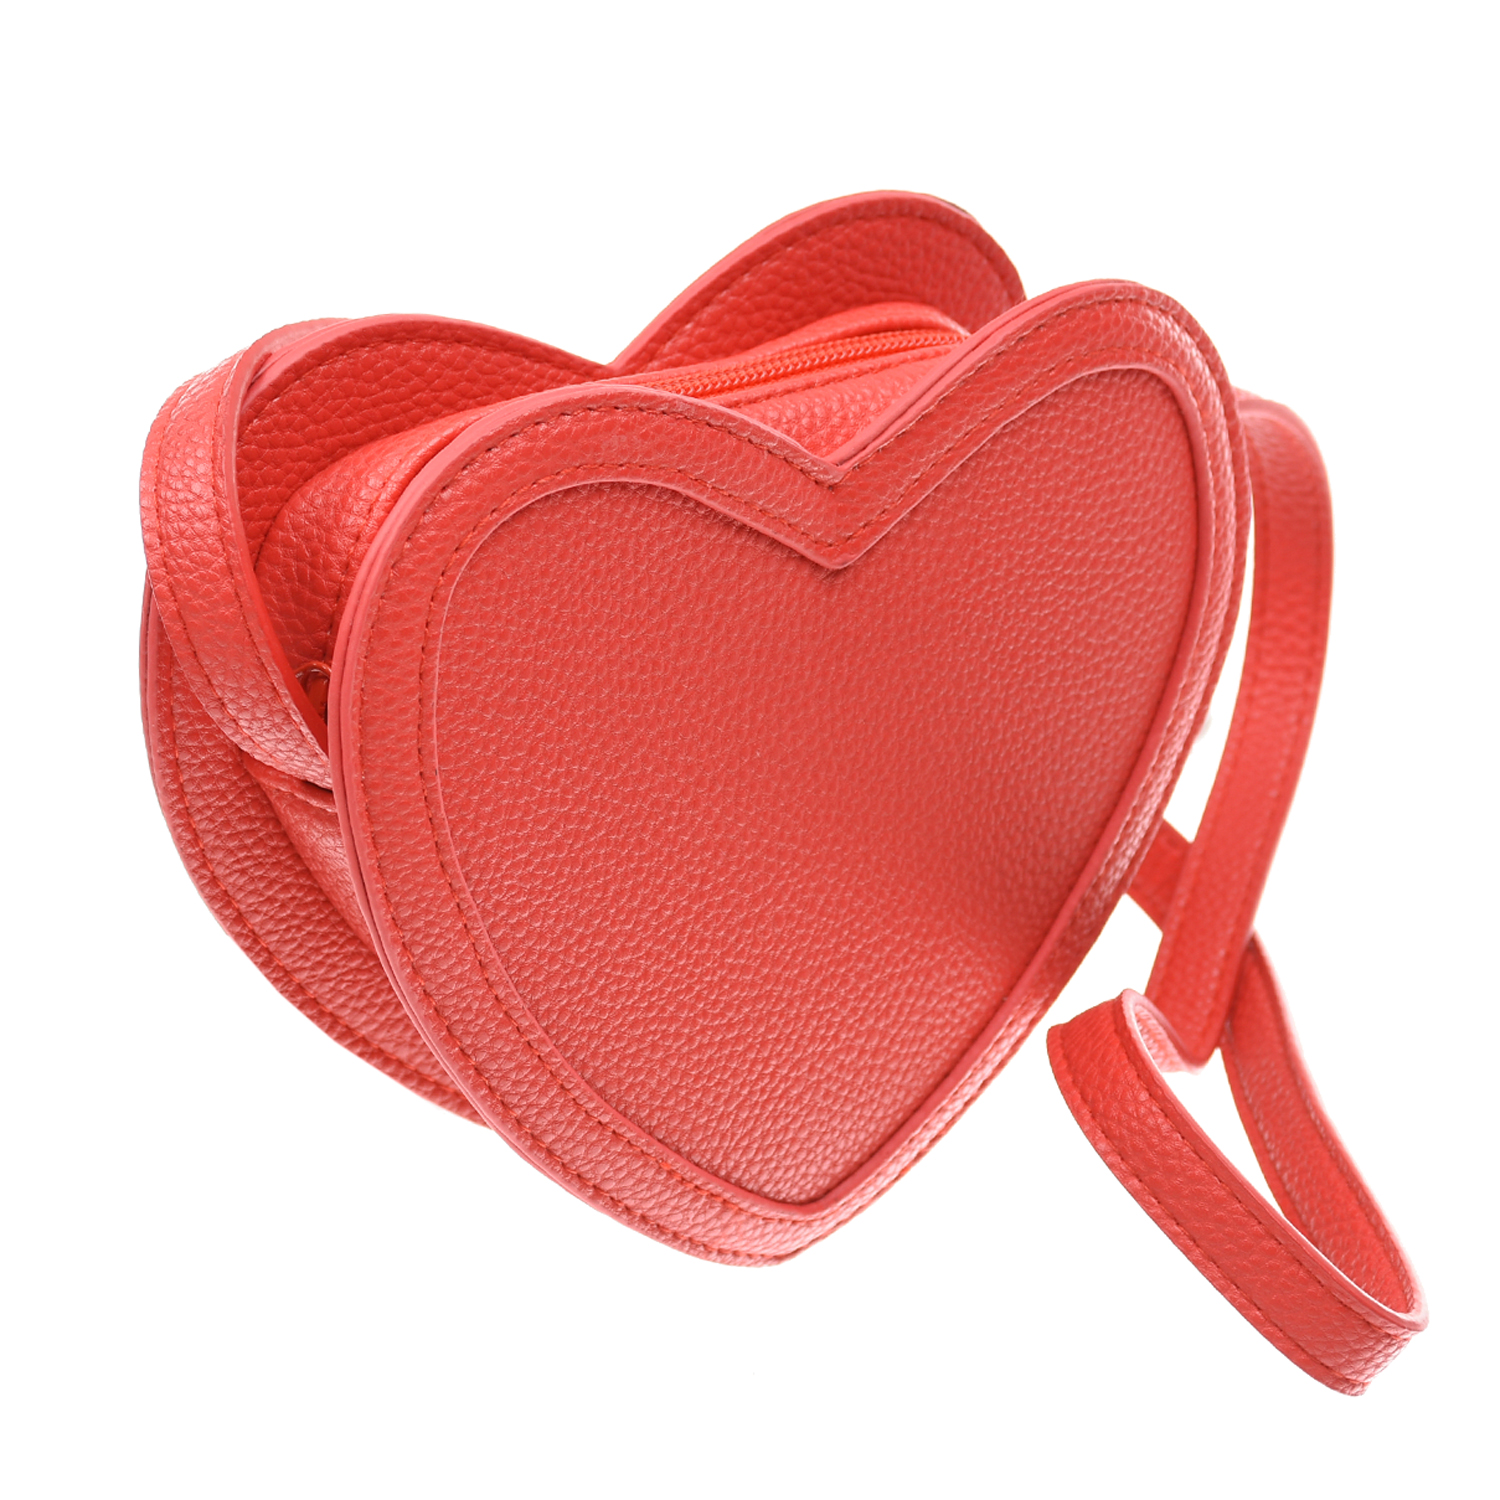 Красная сумка в форме сердца,14x18x4,5 см Molo детская, размер unica, цвет красный - фото 2